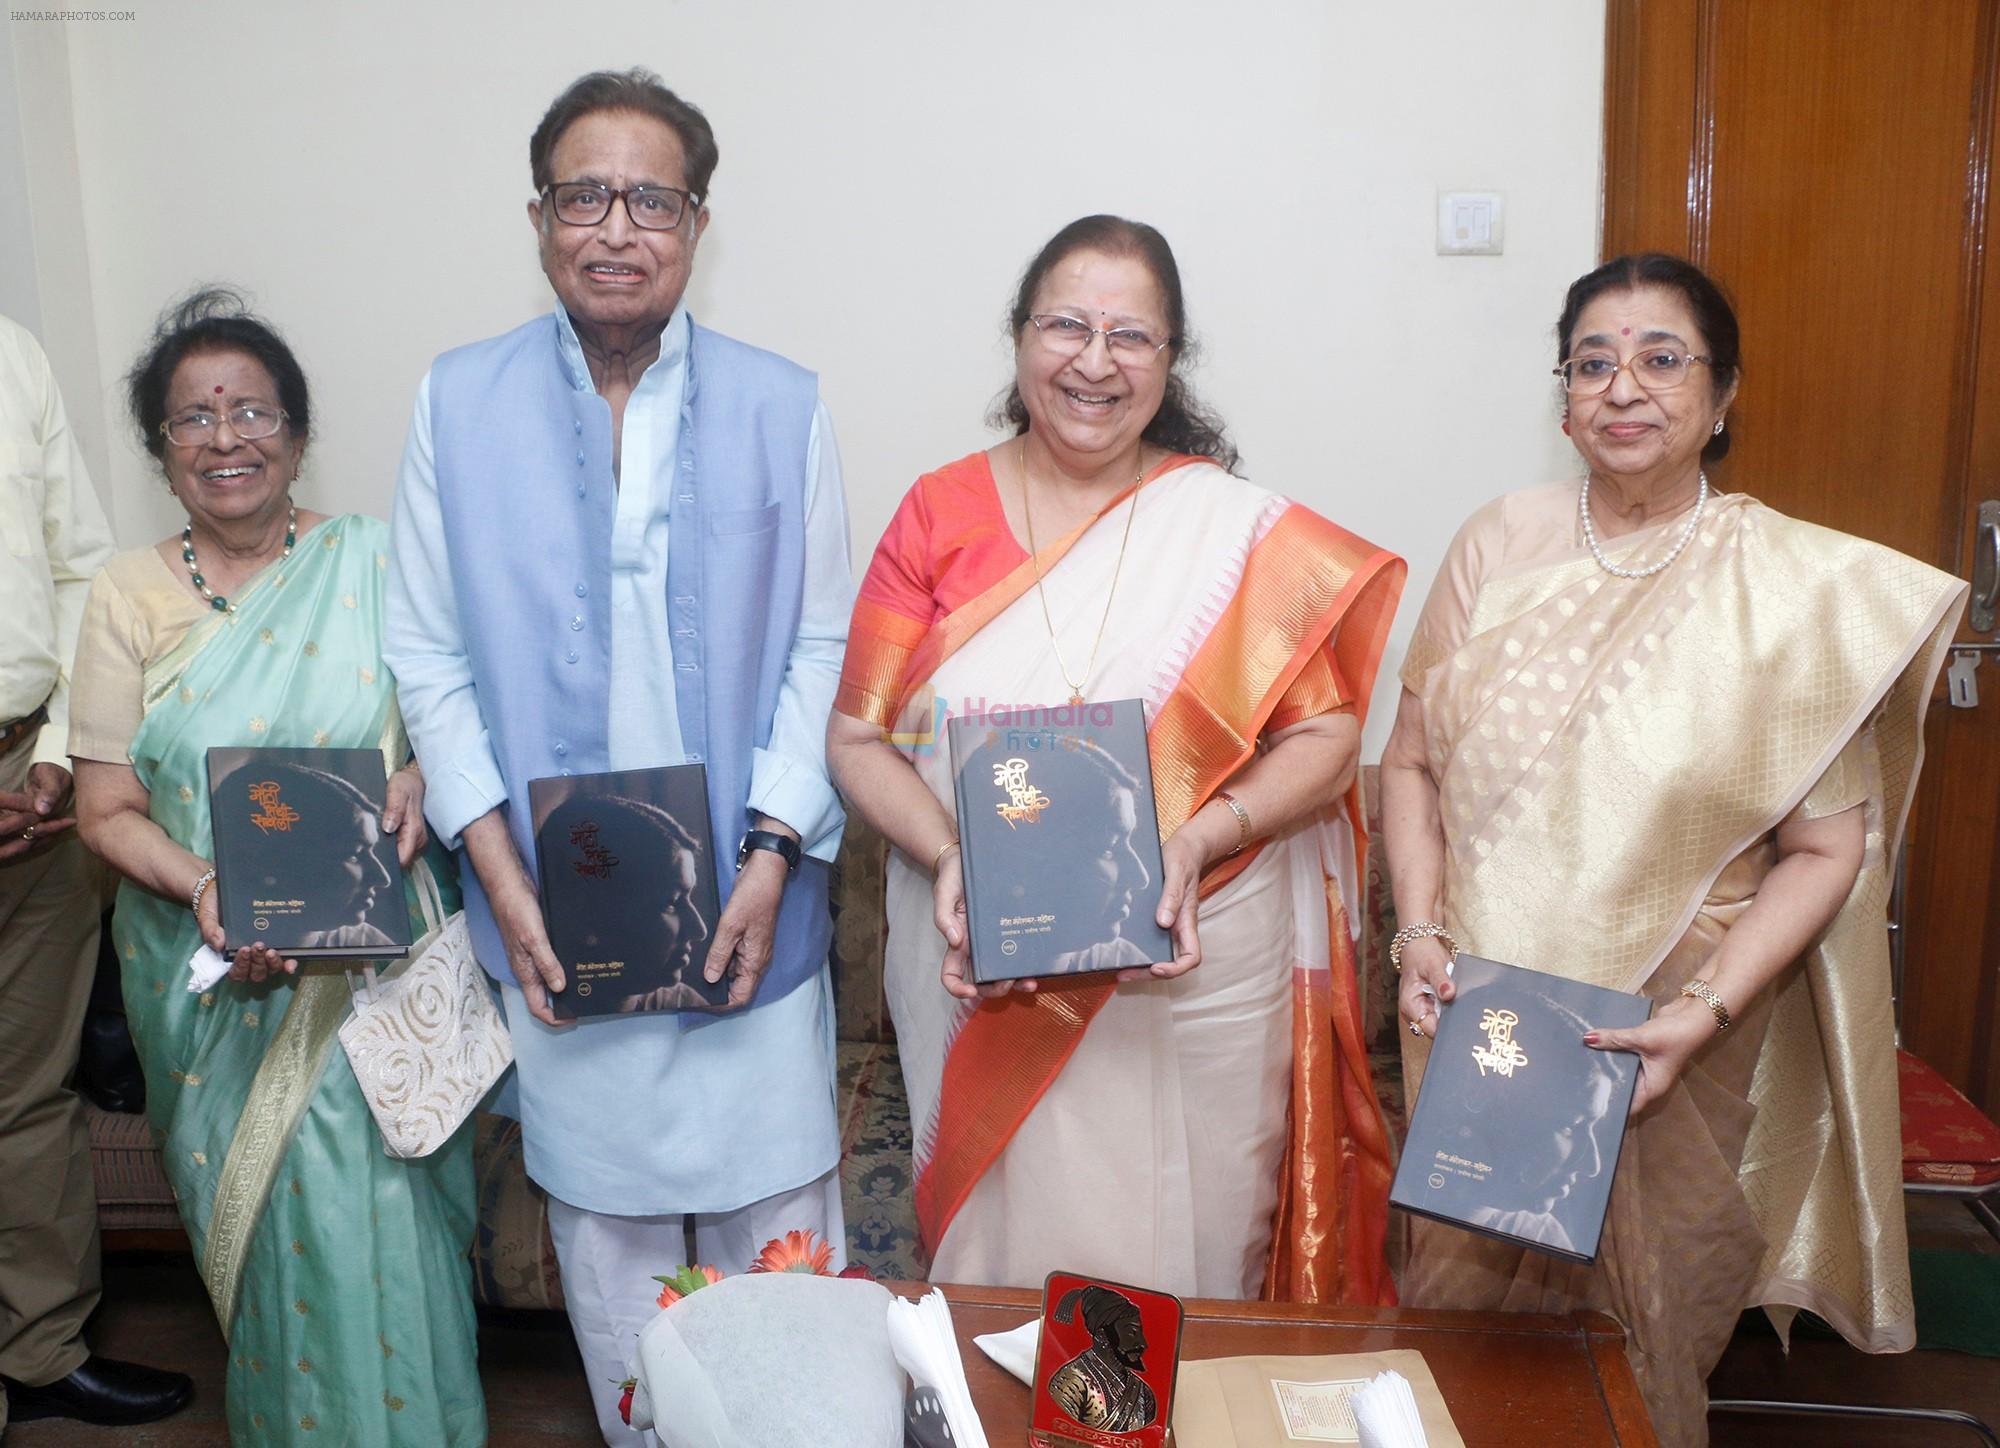 Meena Mangeshkar Khadikar, Hridaynath Mangeshkar, Usha Khadikar and Sumitra Mahajan at the release of Mothi Tichi Savli, a book on Lata Mangeshkar, penned by Meena Mangeshkar-Khadikar